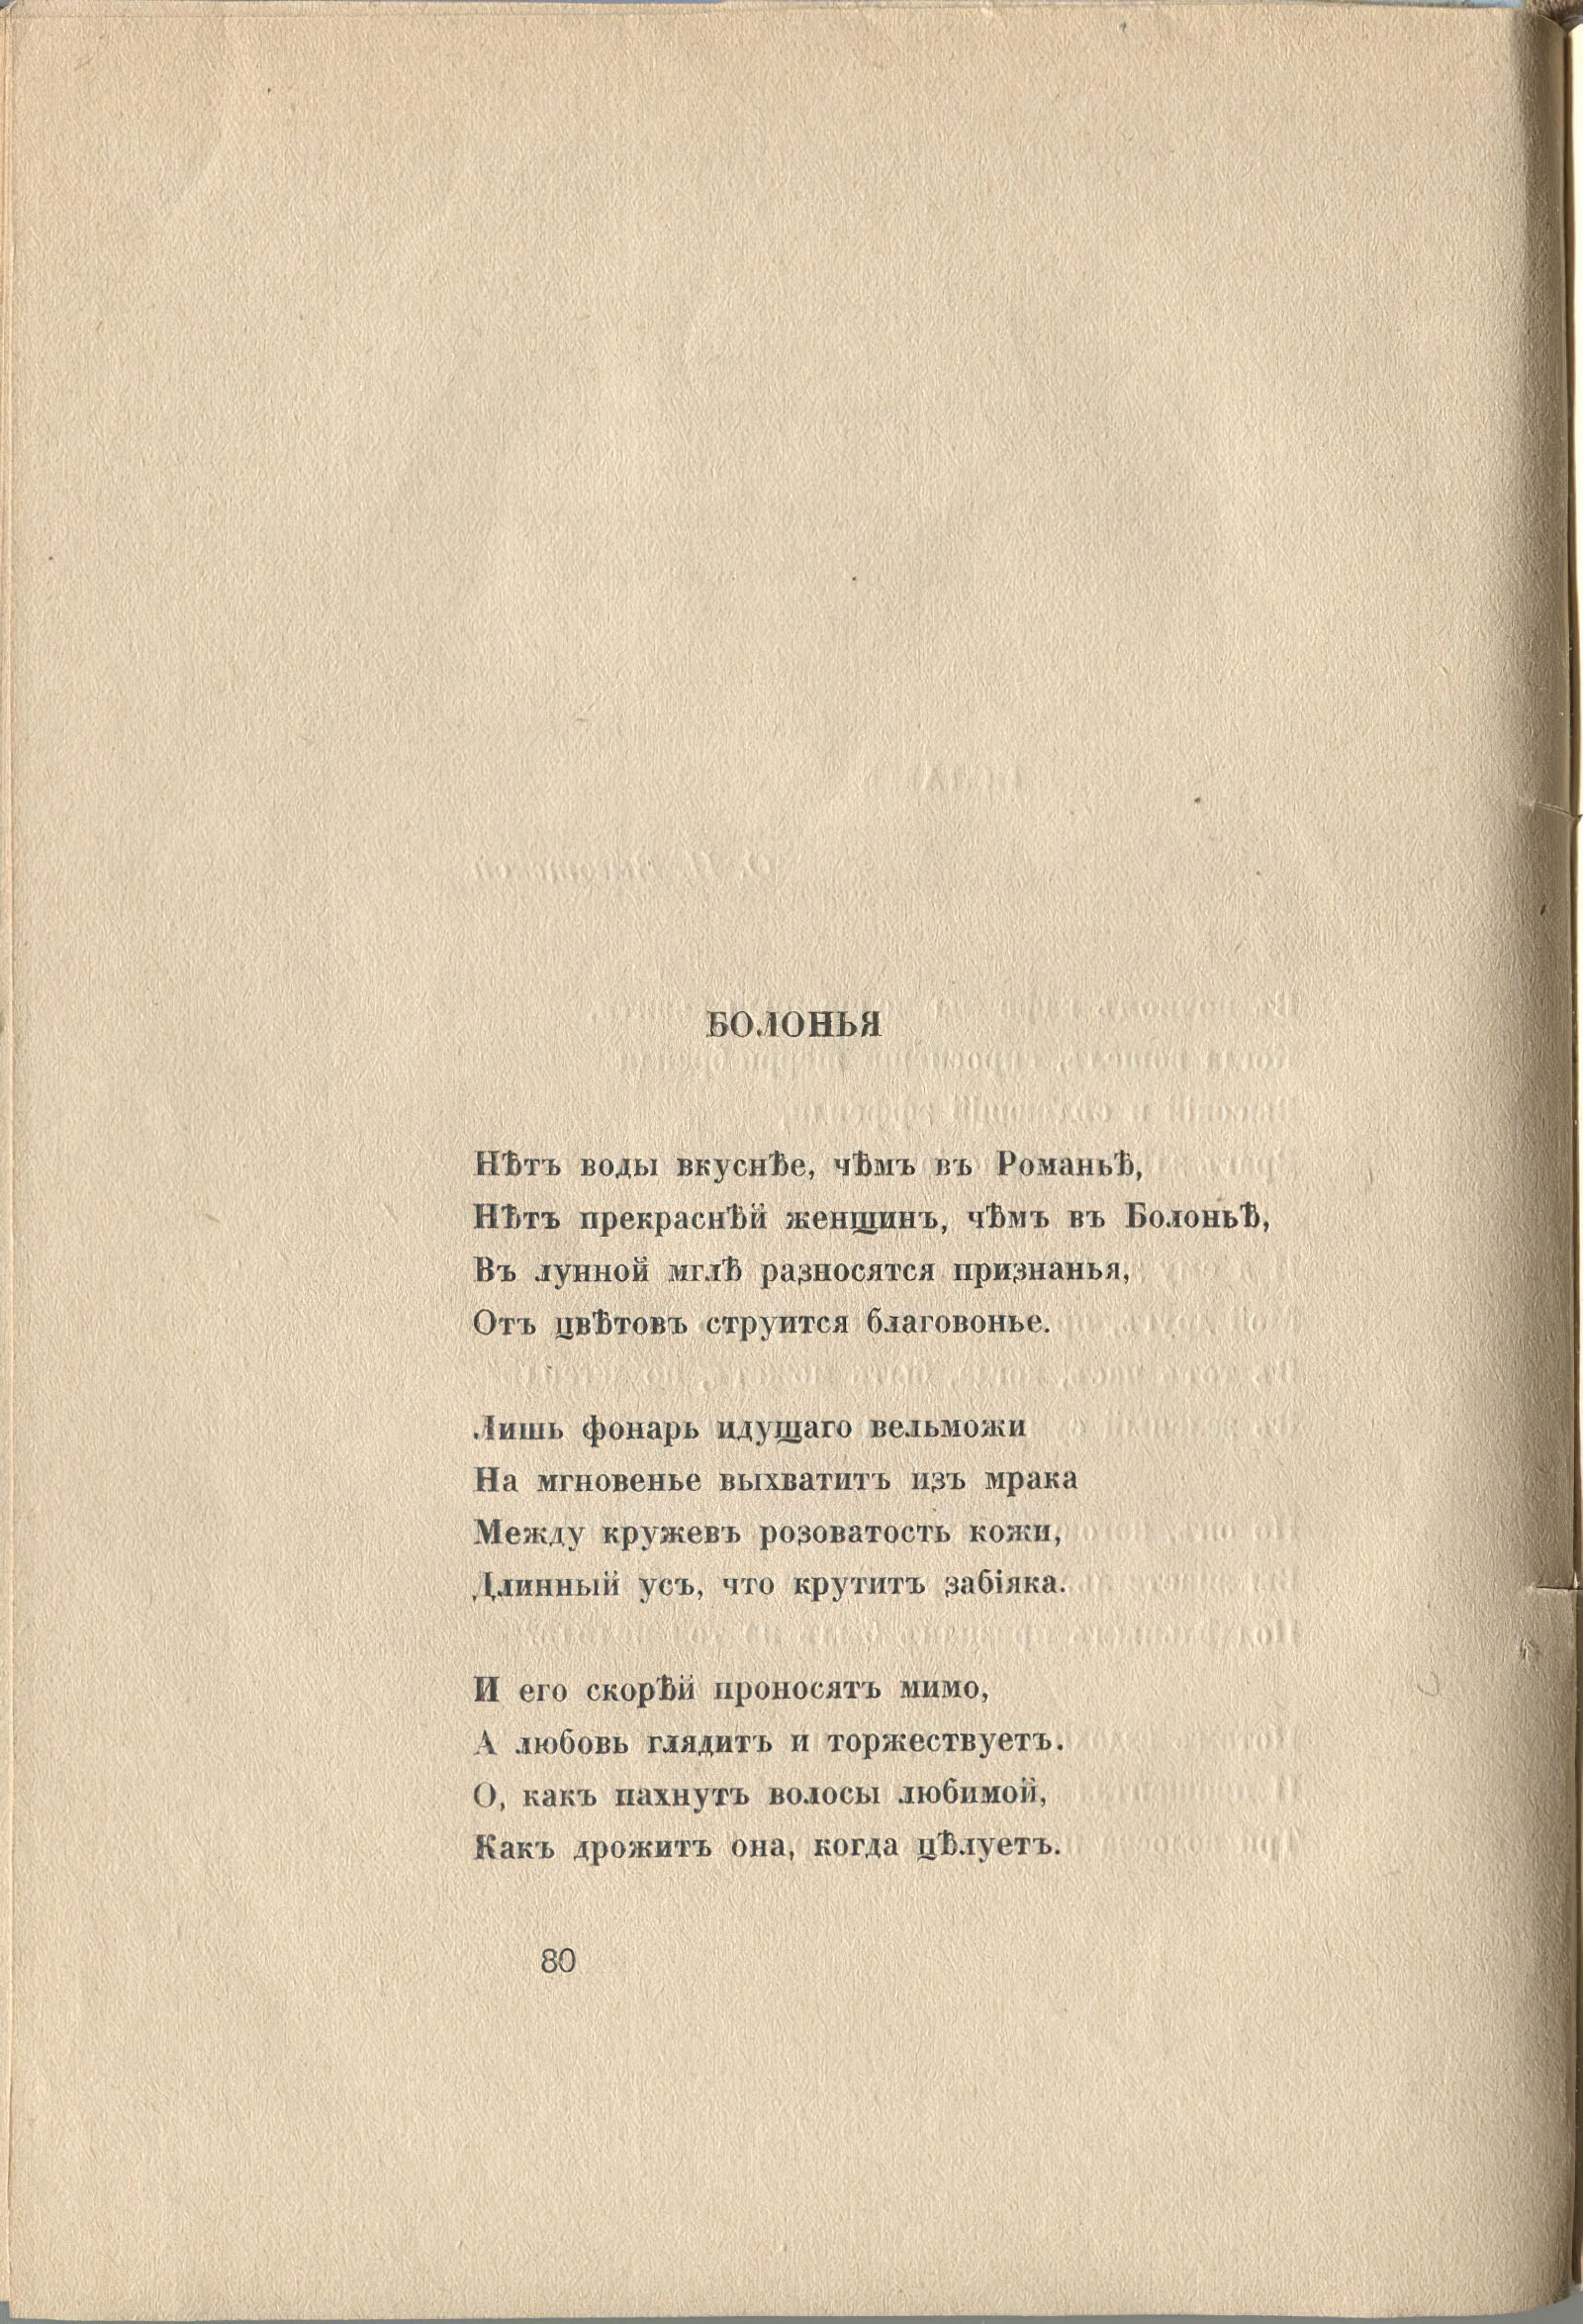 Колчан (1916). Болонья. Страница 80